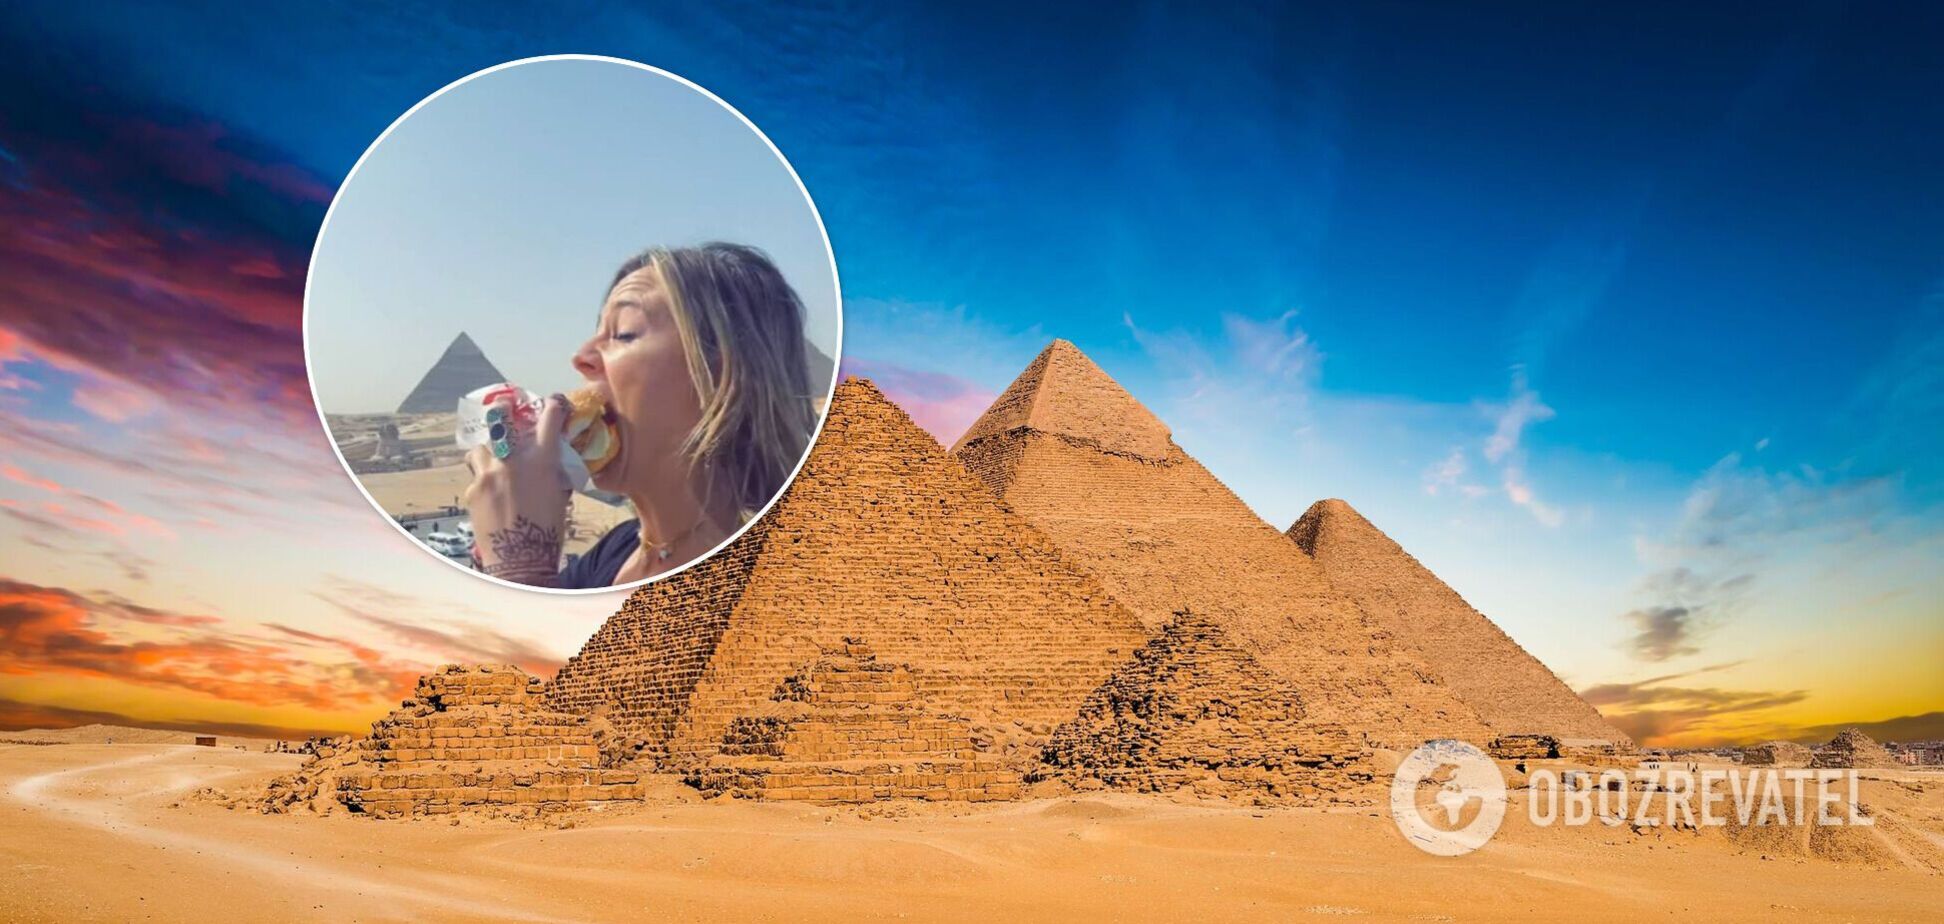 Блогерша подсказала, как сделать идеальное фото на фоне пирамид в Египте